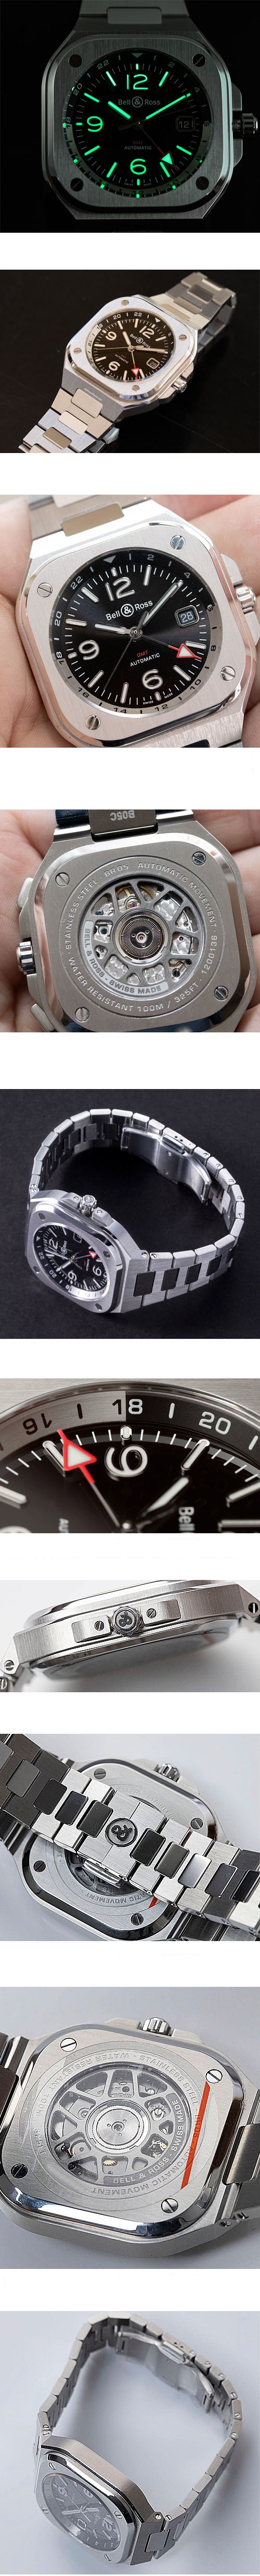 ベル&ロス腕時計の説明